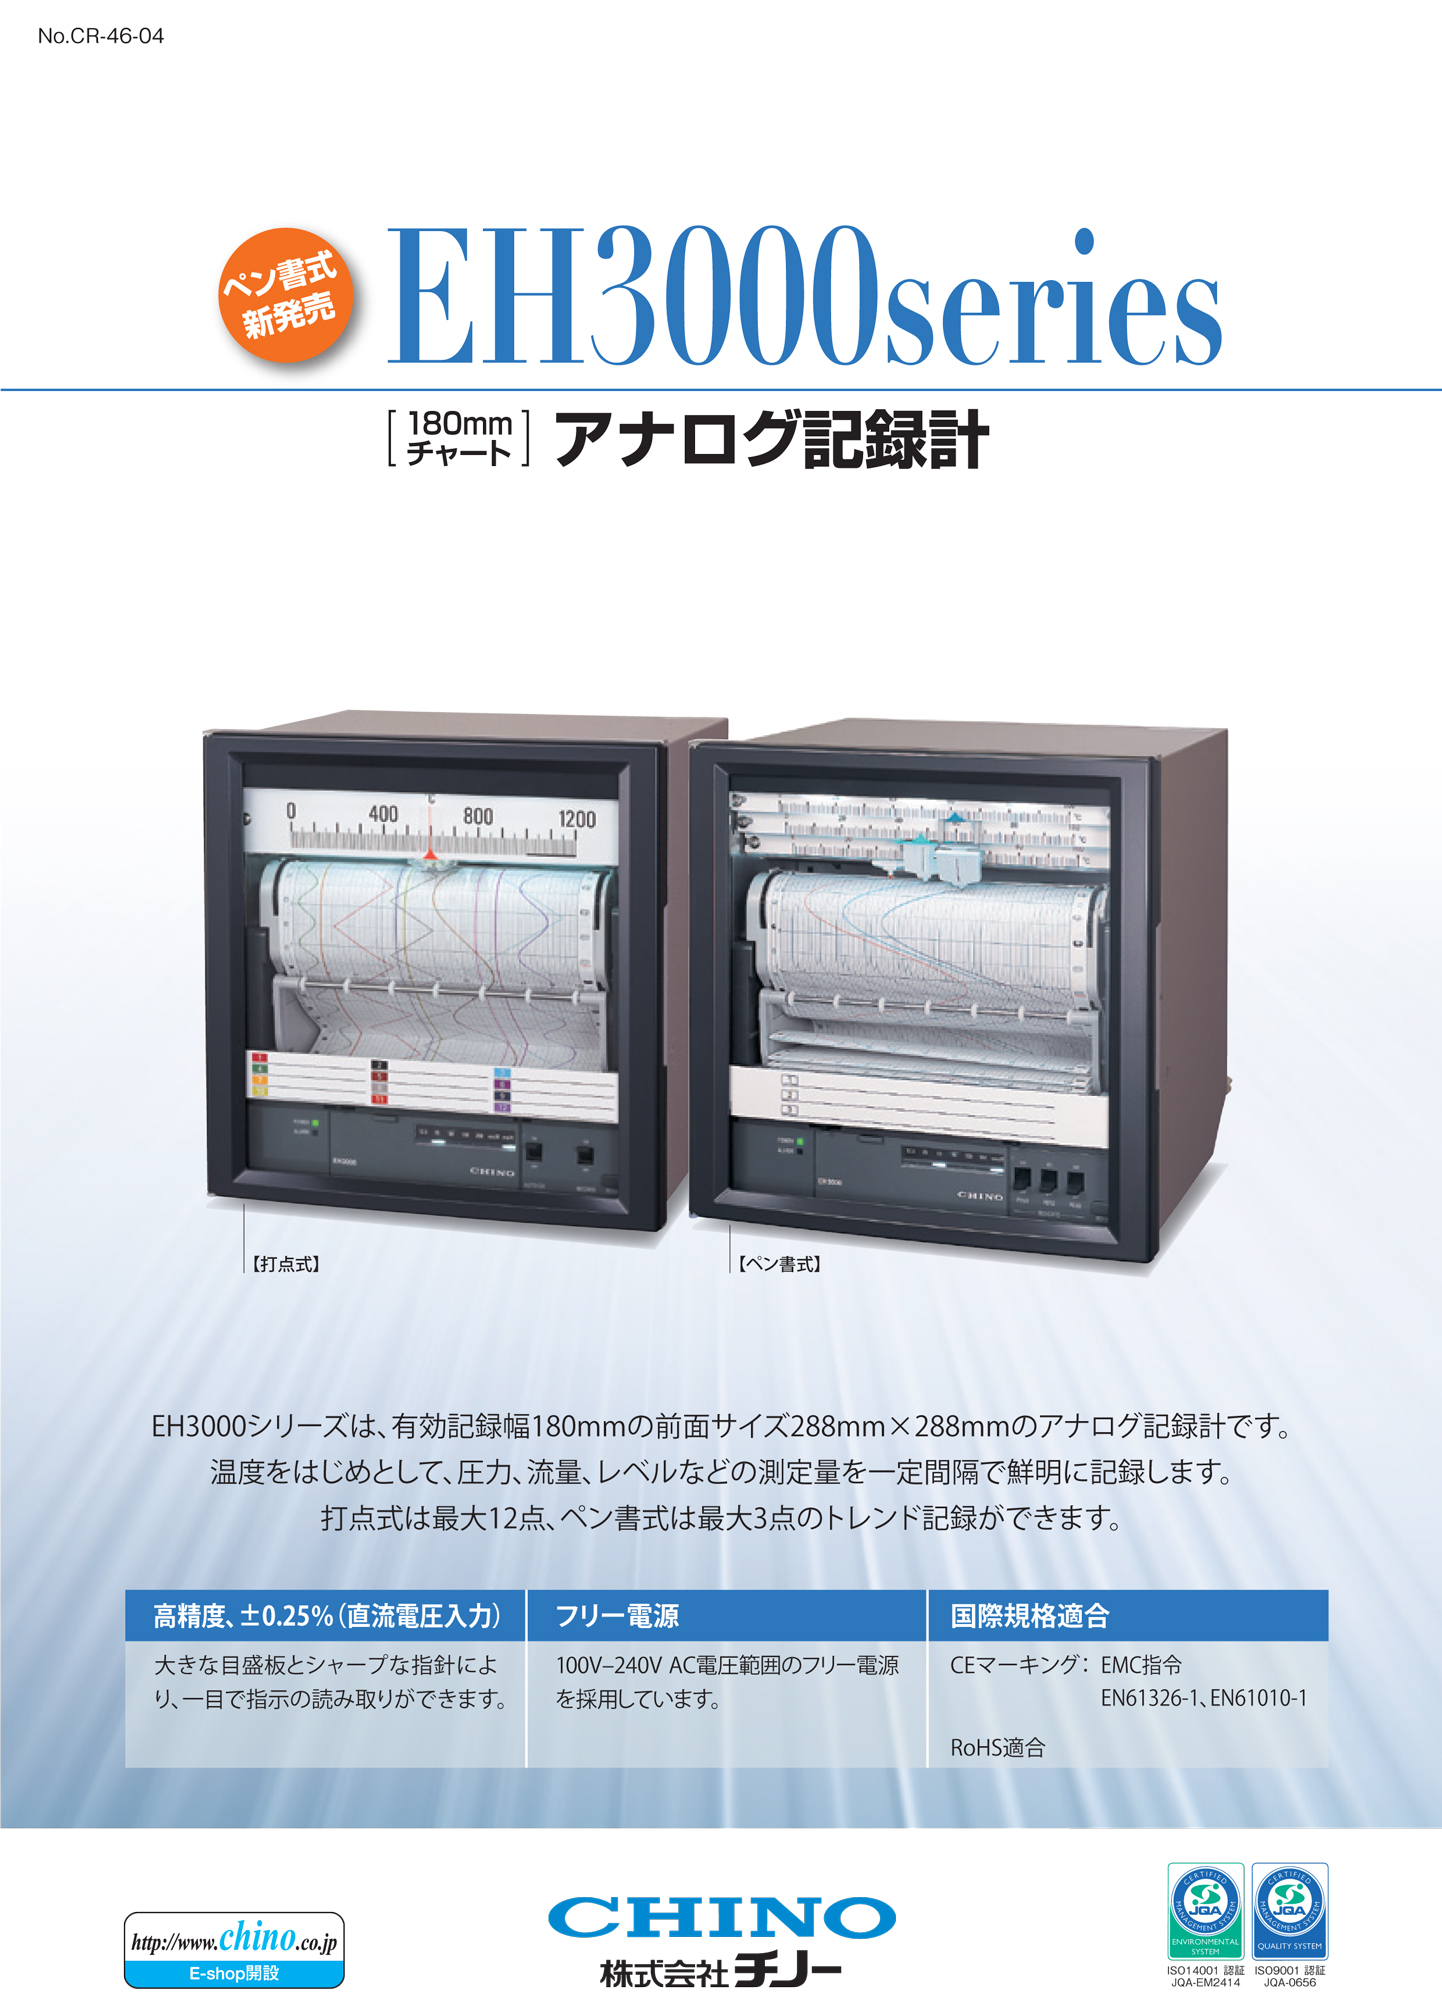 アナログ記録計 EH3000シリーズ（株式会社チノー）のカタログ無料